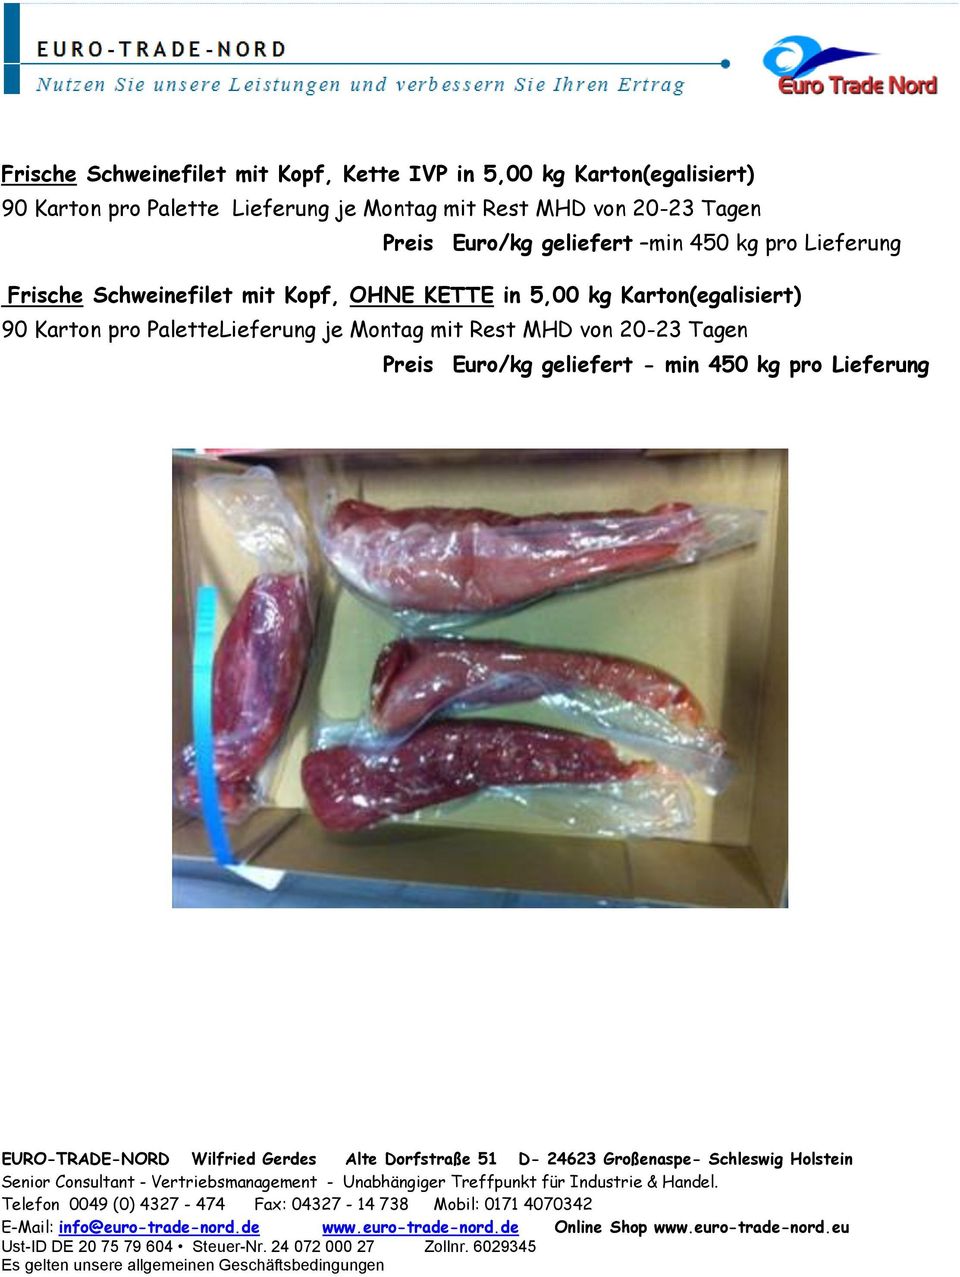 Lieferung Frische Schweinefilet mit Kopf, OHNE KETTE in 5,00 kg Karton(egalisiert) 90 Karton pro